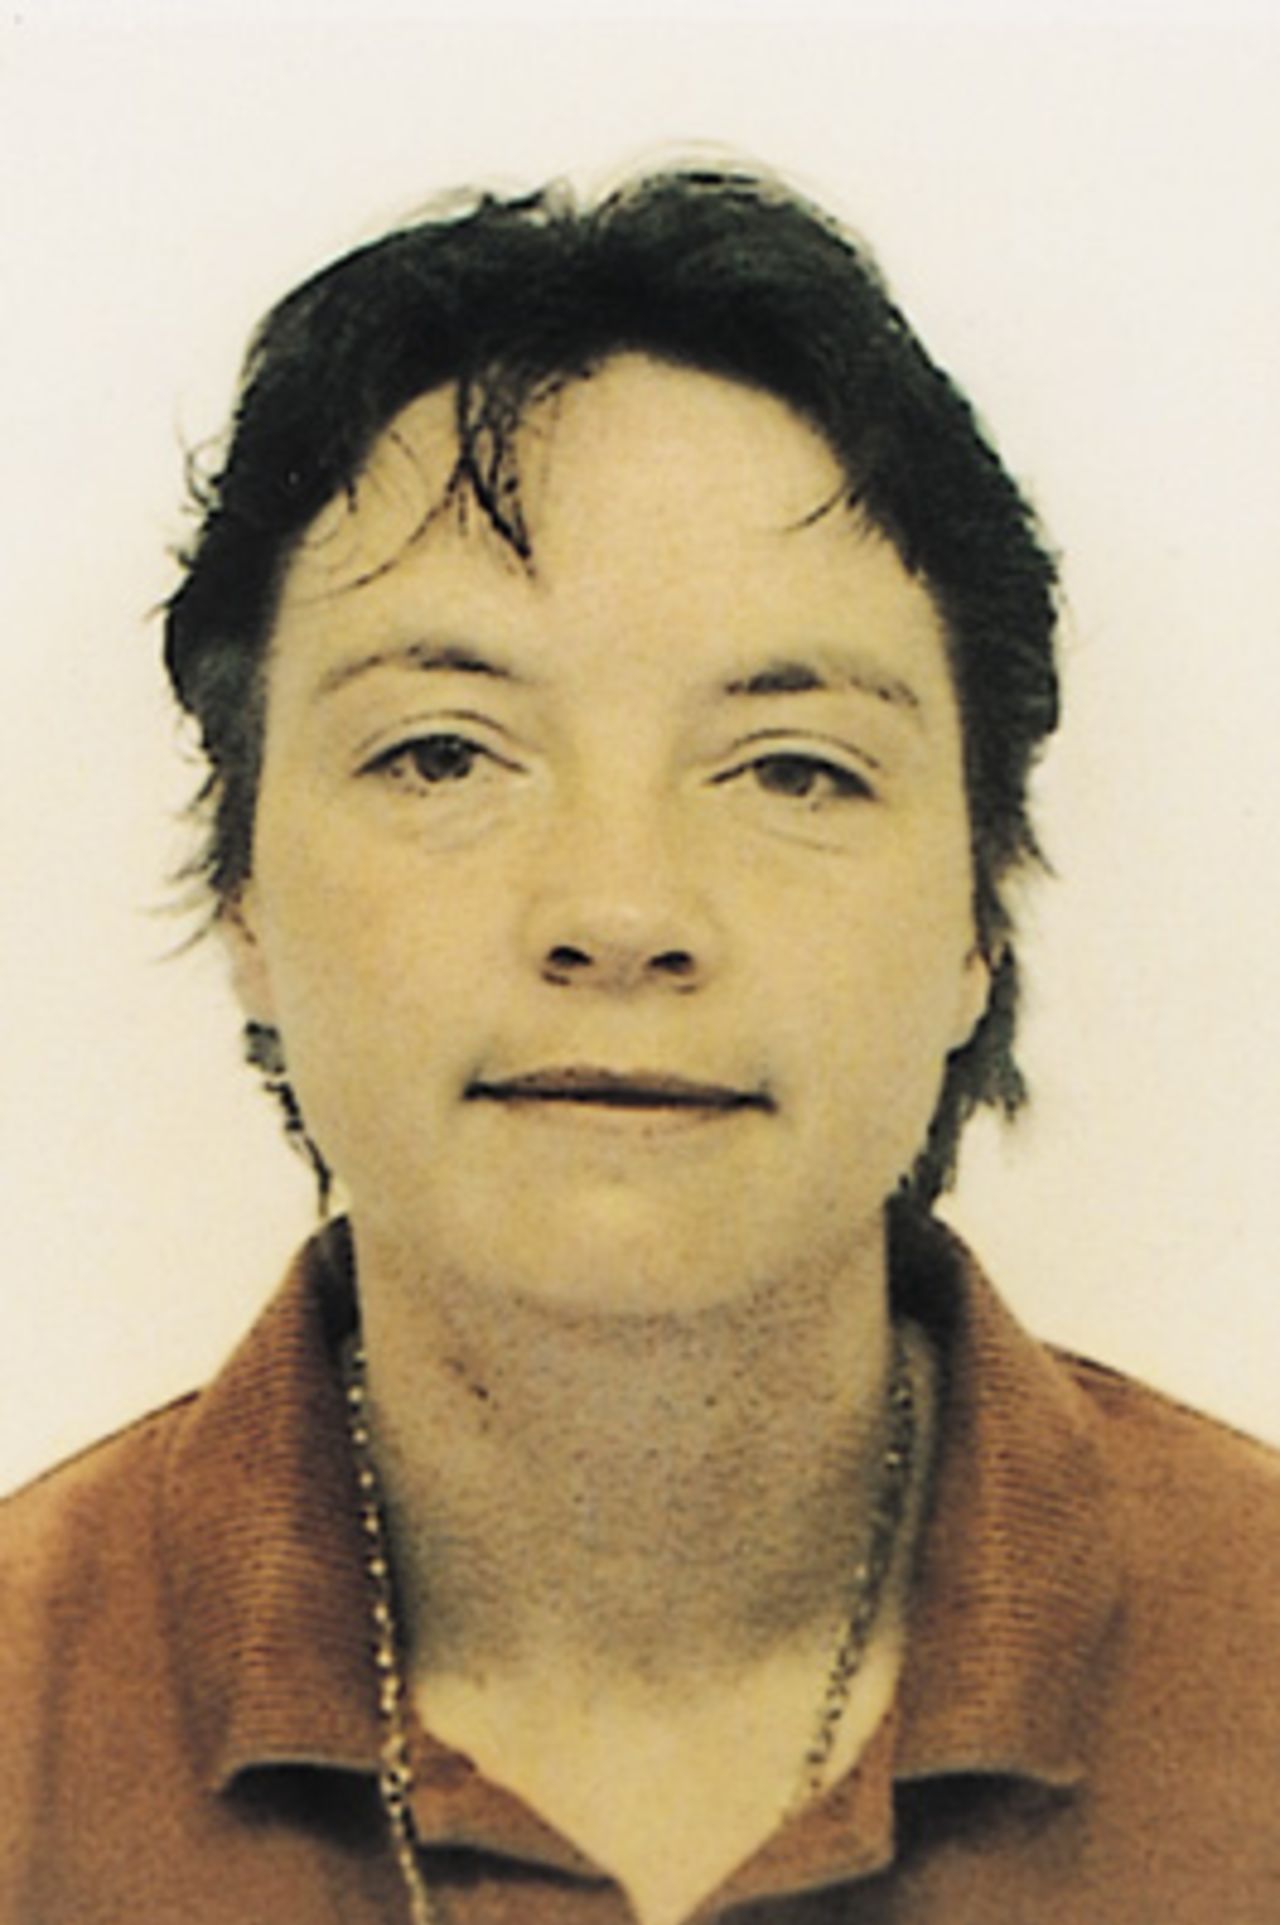 Portrait of Ali O'Brien - Ireland preliminary squad member for the CricInfo Women's World Cup 2000